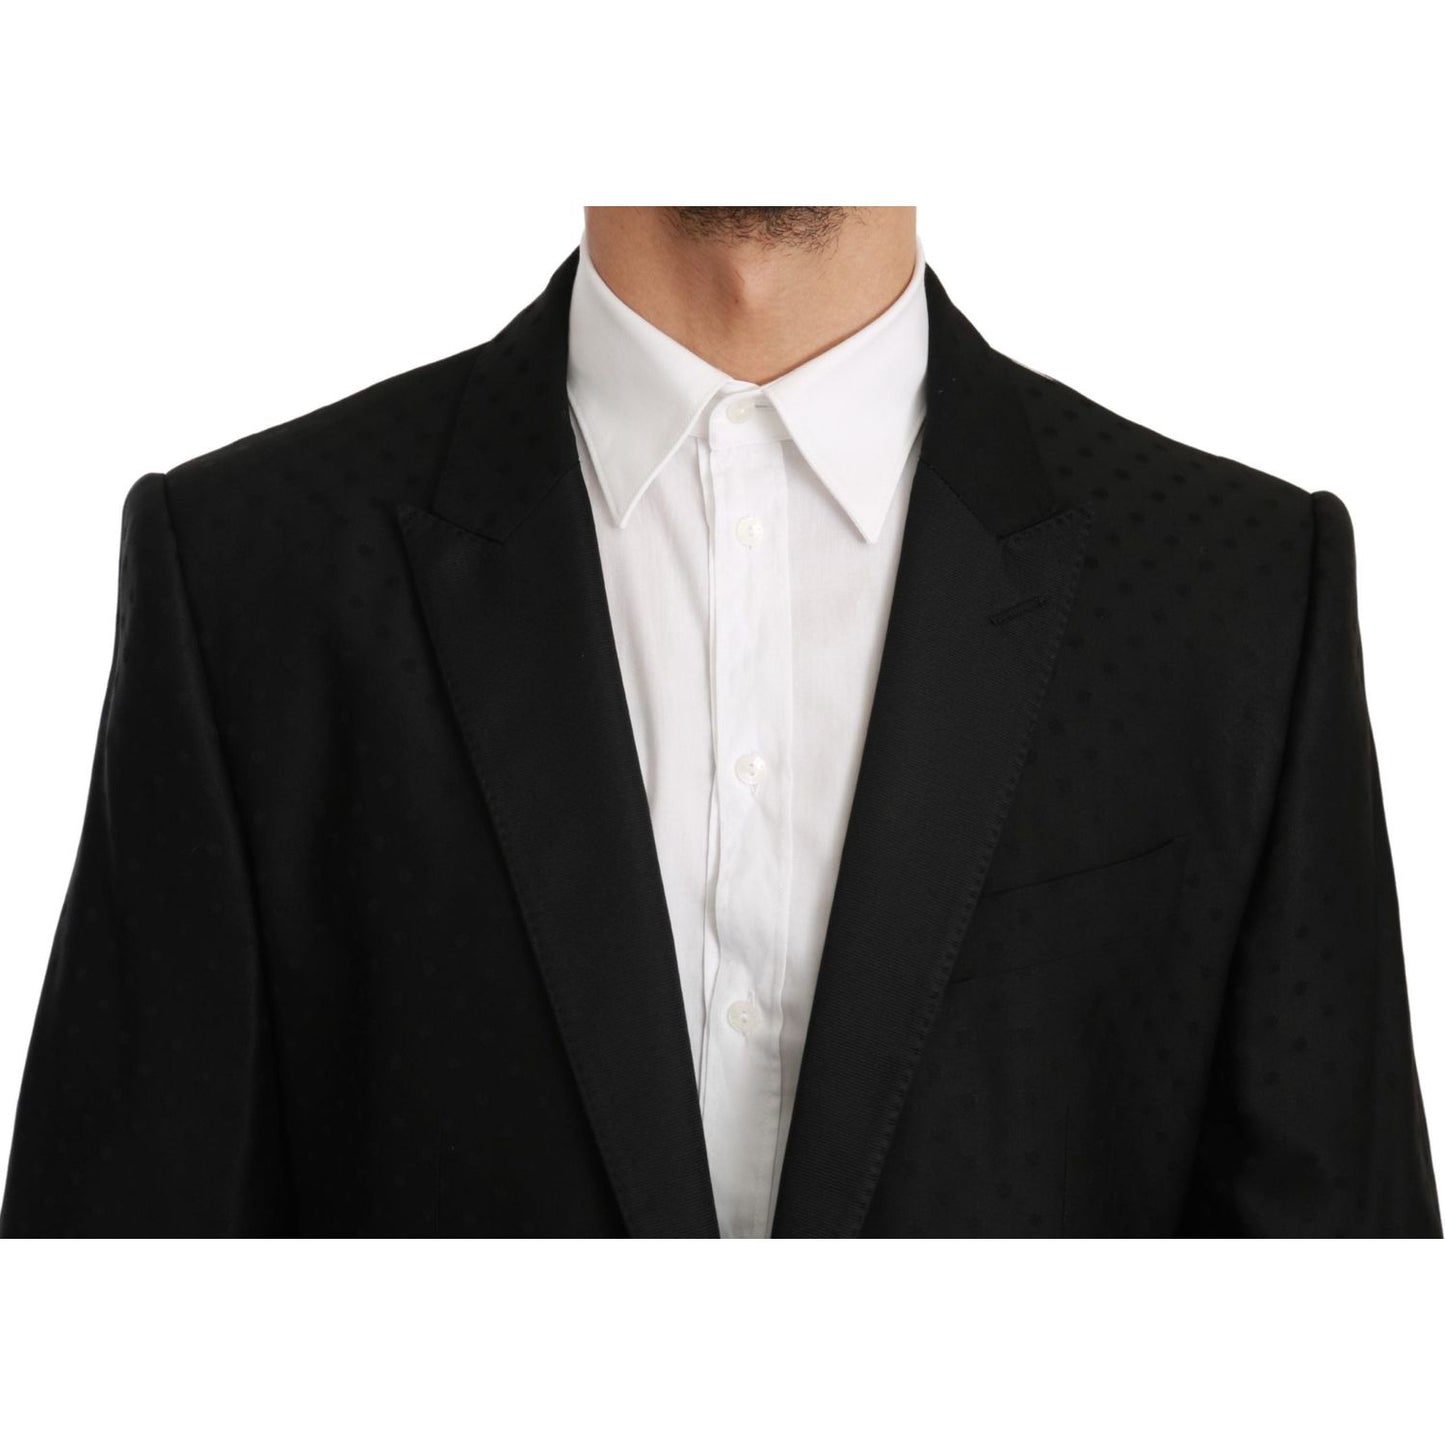 Dolce & Gabbana Polka Dotted Slim Fit Martini Jacket black-slim-fit-coat-jacket-martini-blazer-1 IMG_2560-scaled-60544c08-6f7.jpg